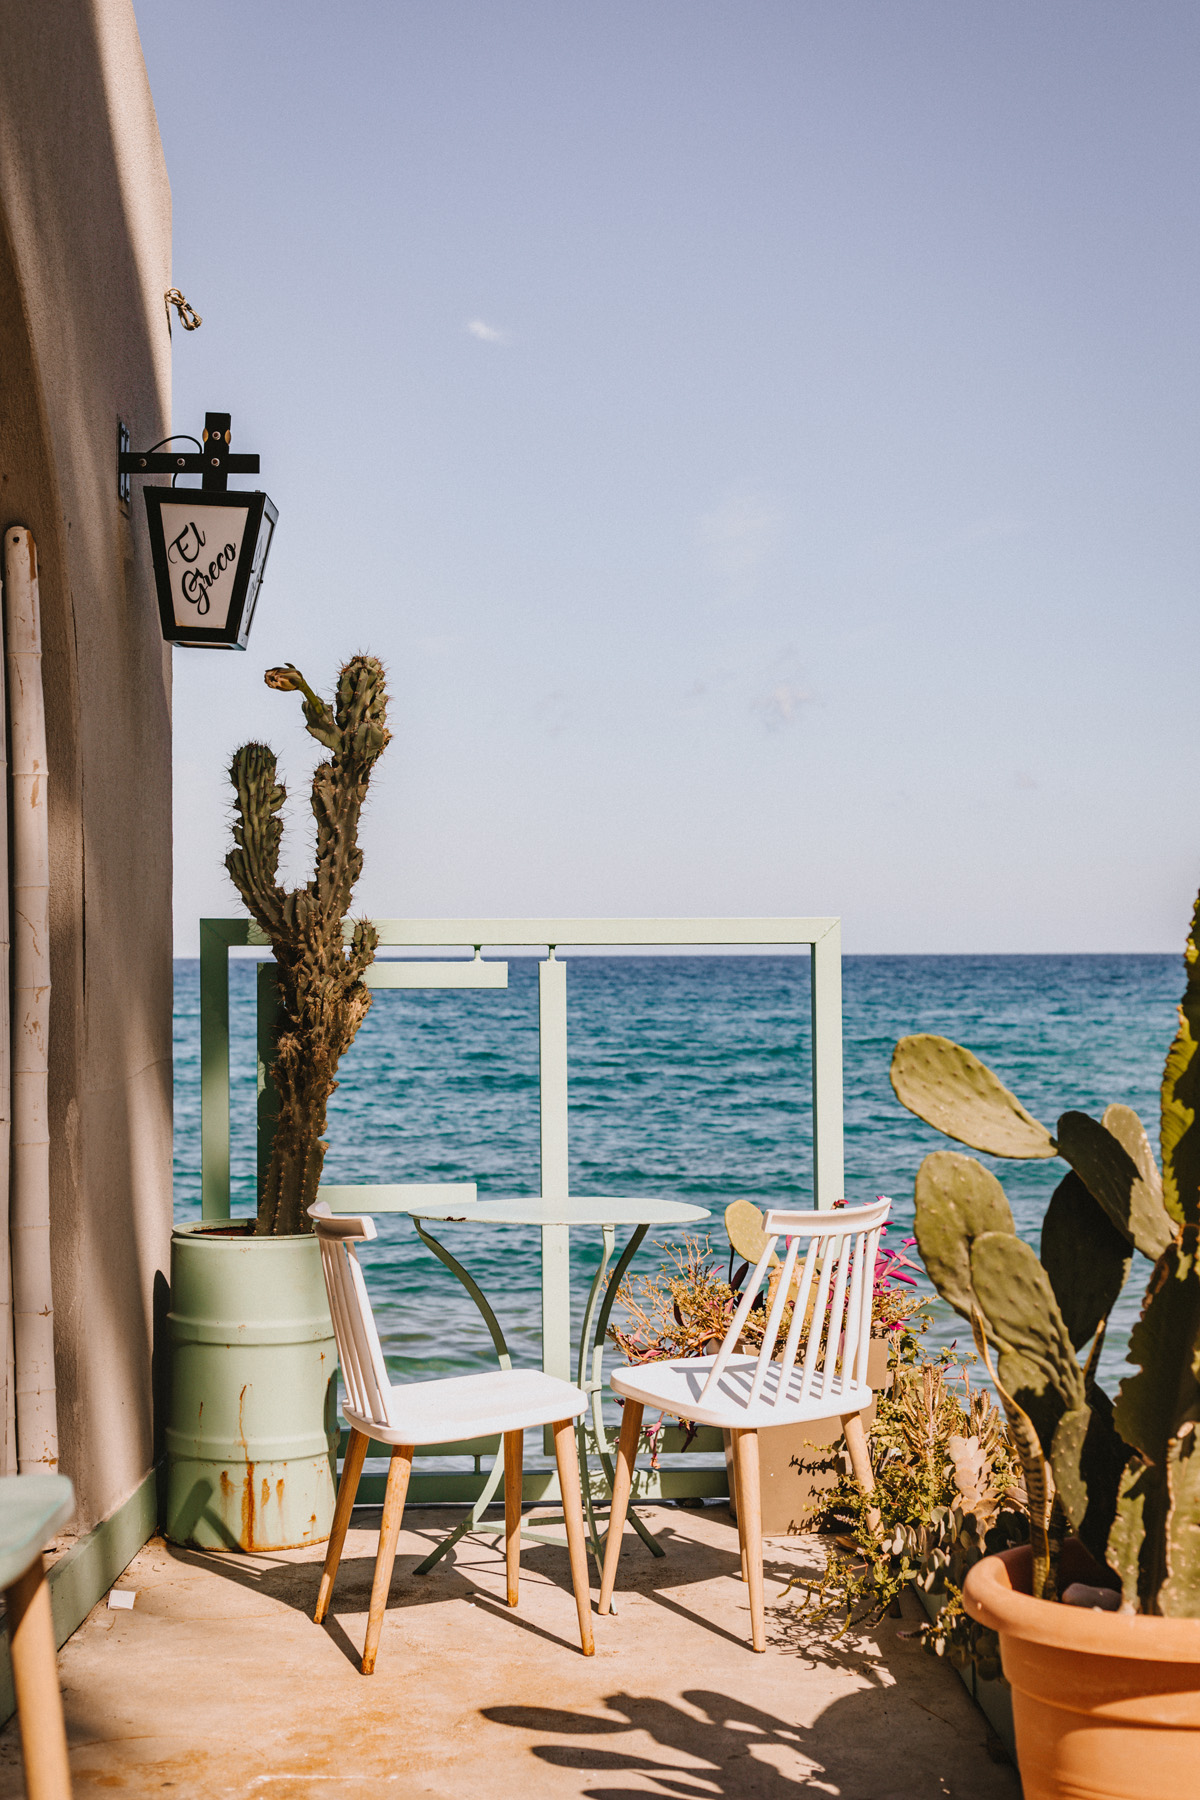 Chersonissos auf Kreta: Restaurant an der Strandpromenade 